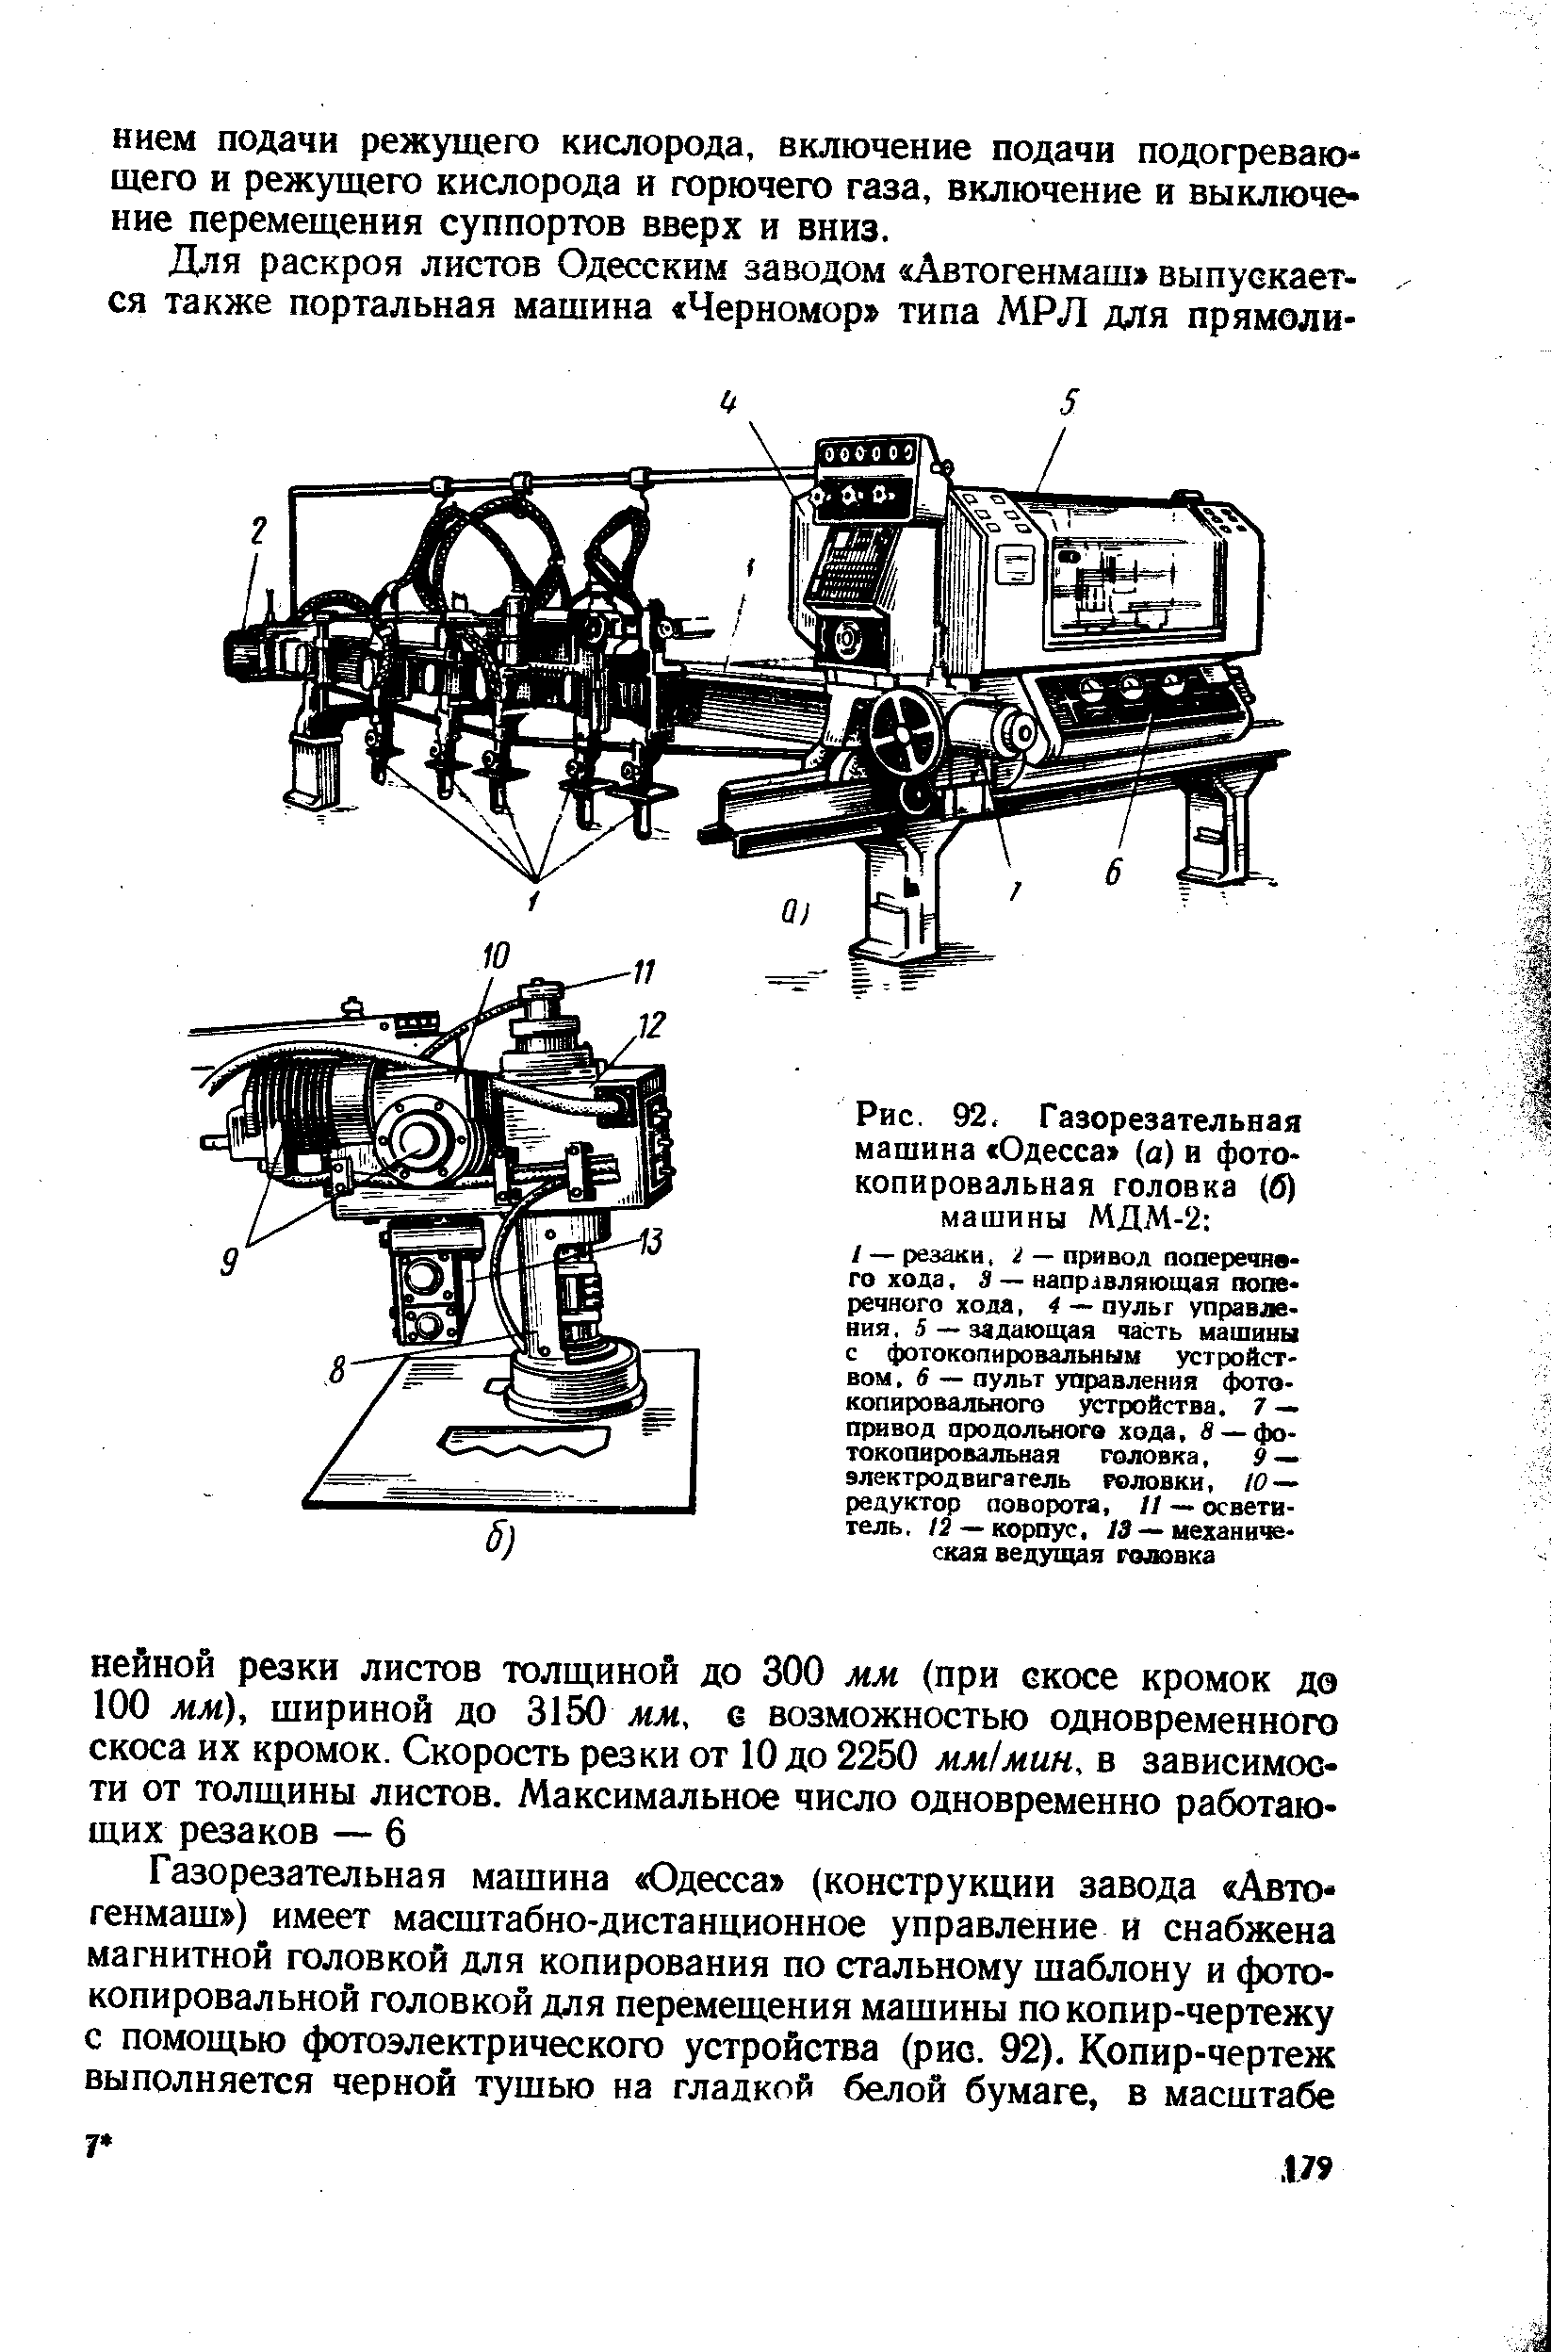 Рис. 92, Газорезательная машина Одесса> (а) и фотокопировальная головка (б) машины МДМ-2 
